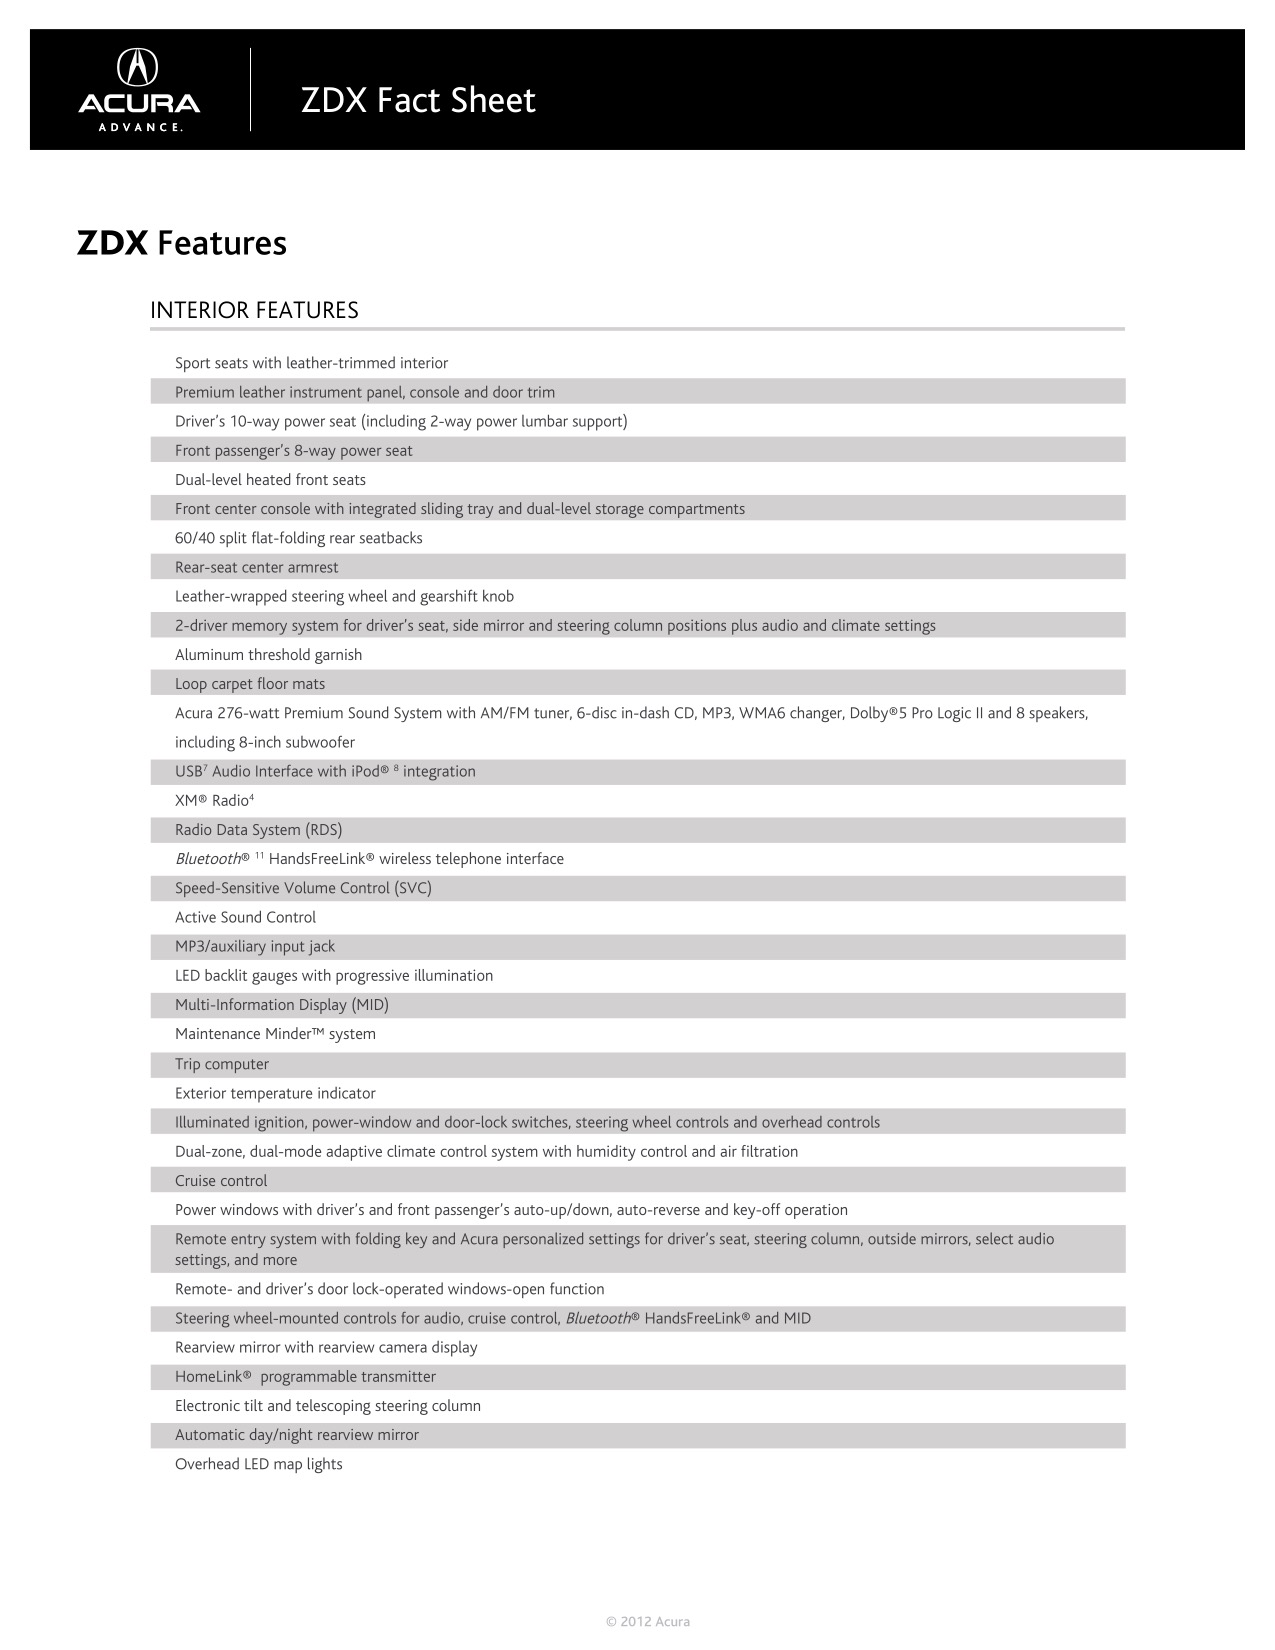 2012 Acura ZDX Brochure Page 16